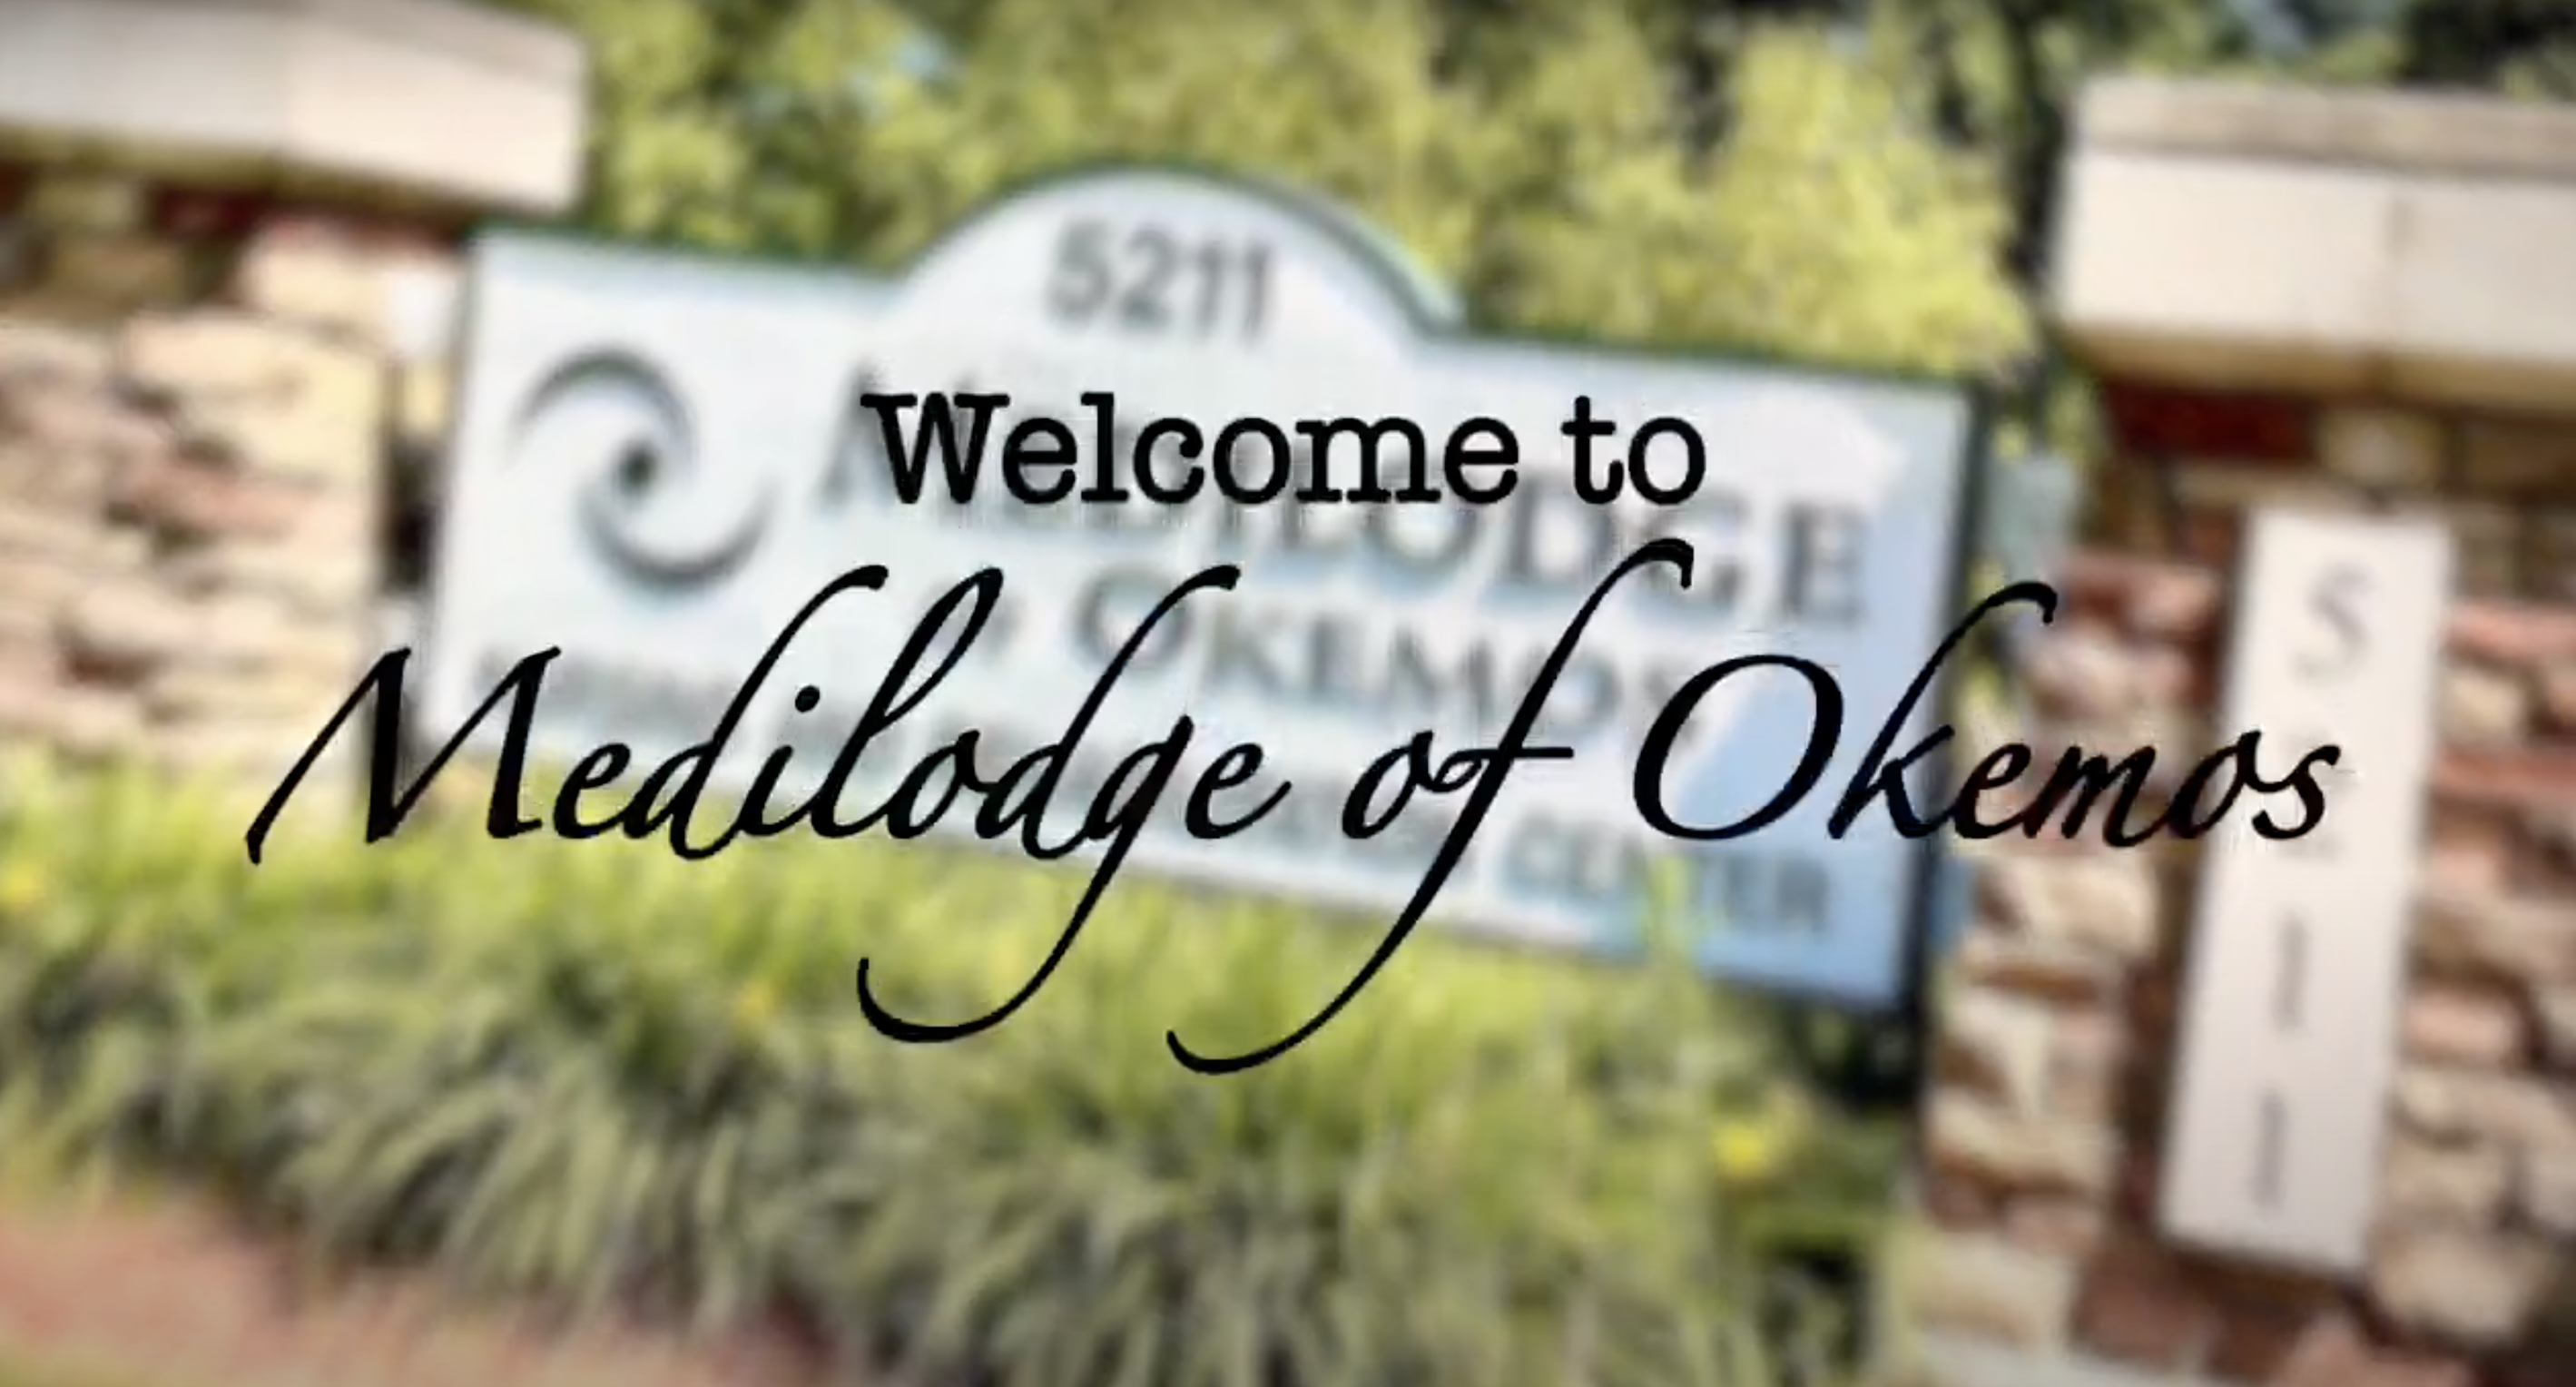 A virtual tour of MediLodge of Okemos!